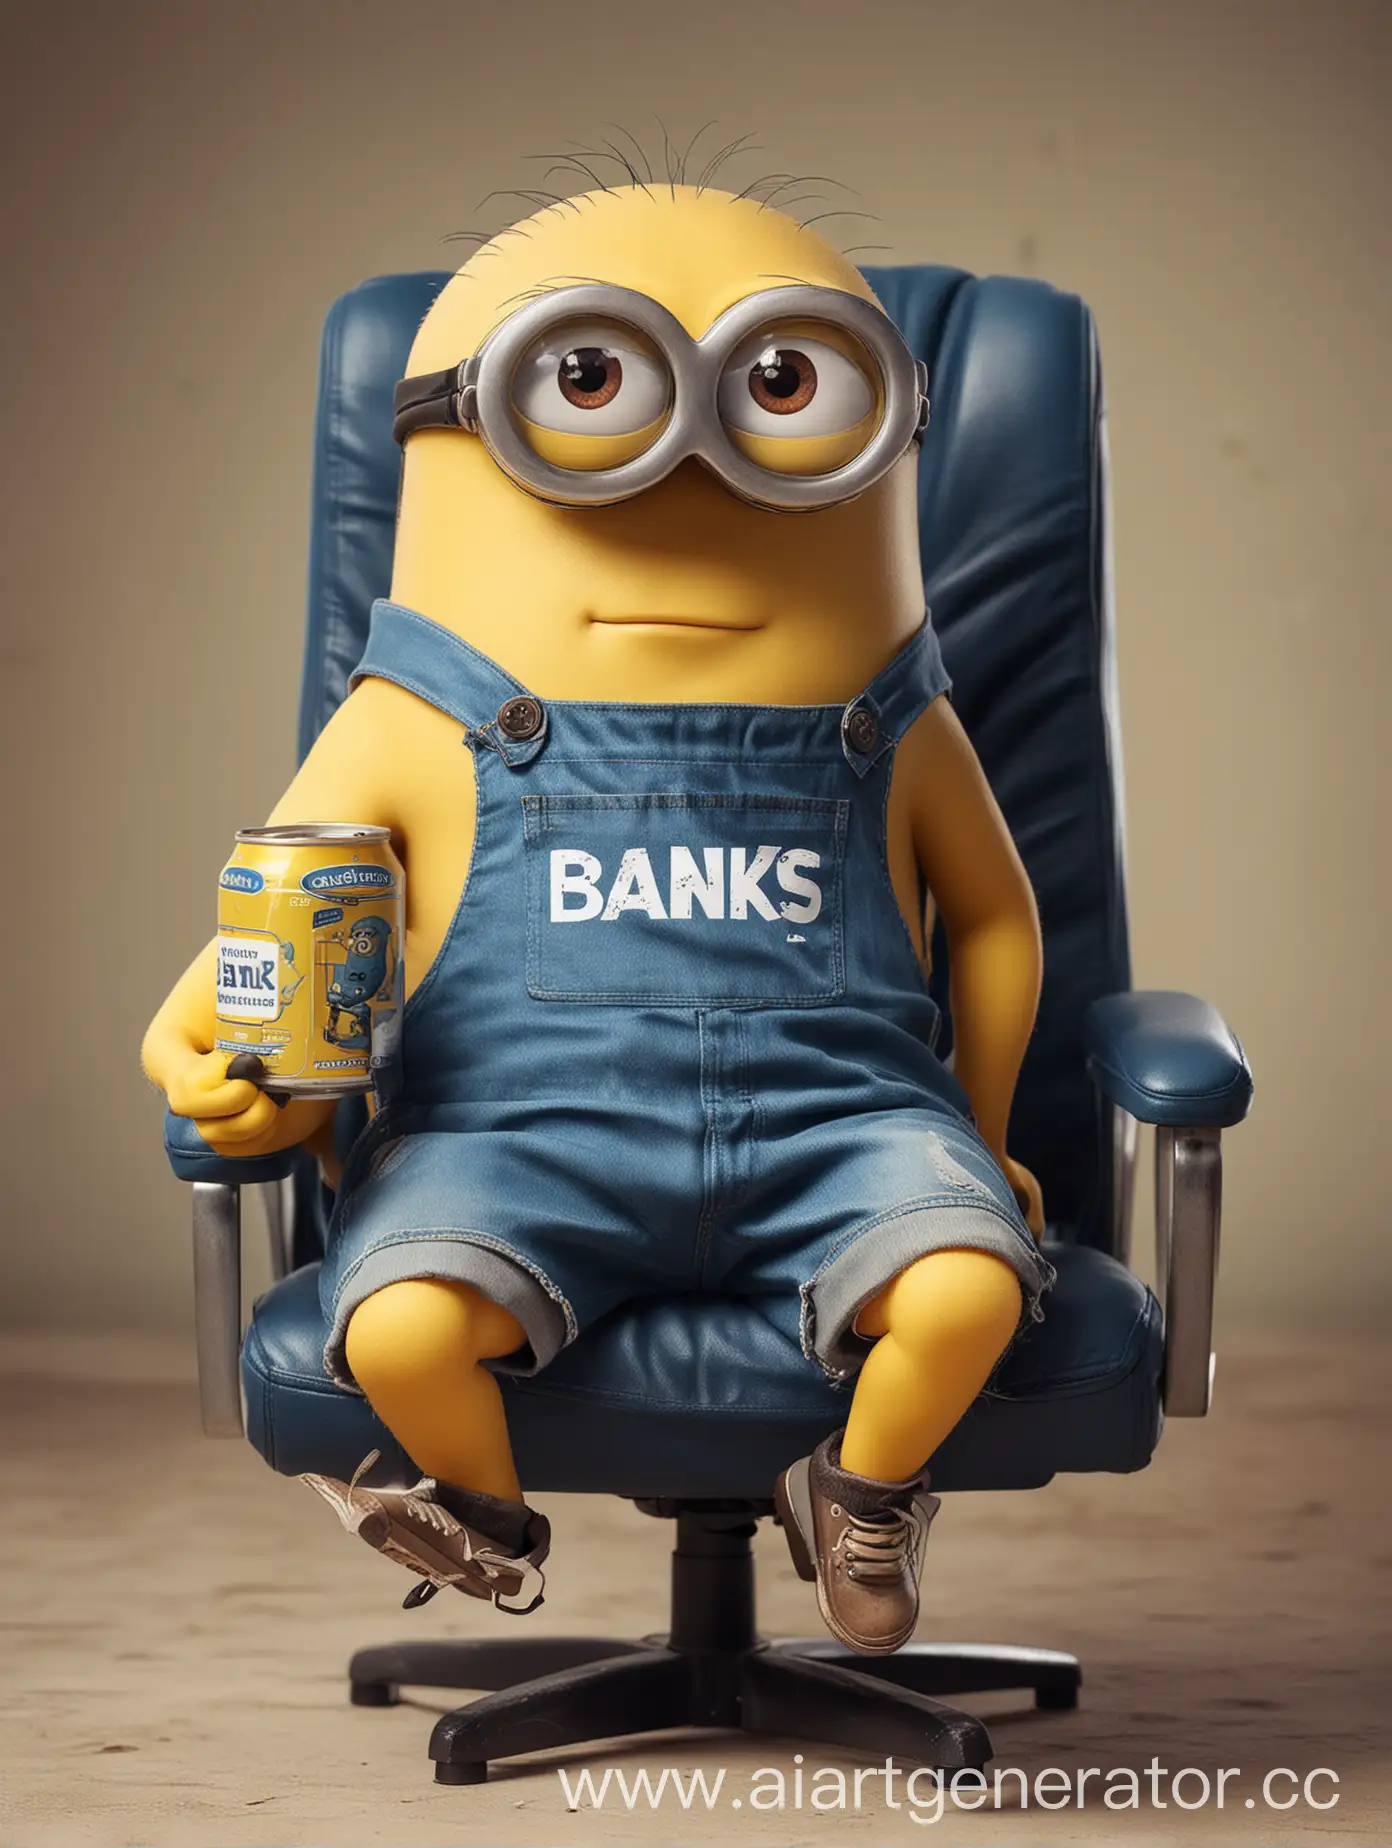 Жёлтый Одноглазый миньон в крутых очках и с банкой в руках сидит на игровом кресле, на него надетас синяя футболка с надписью "BANKA"